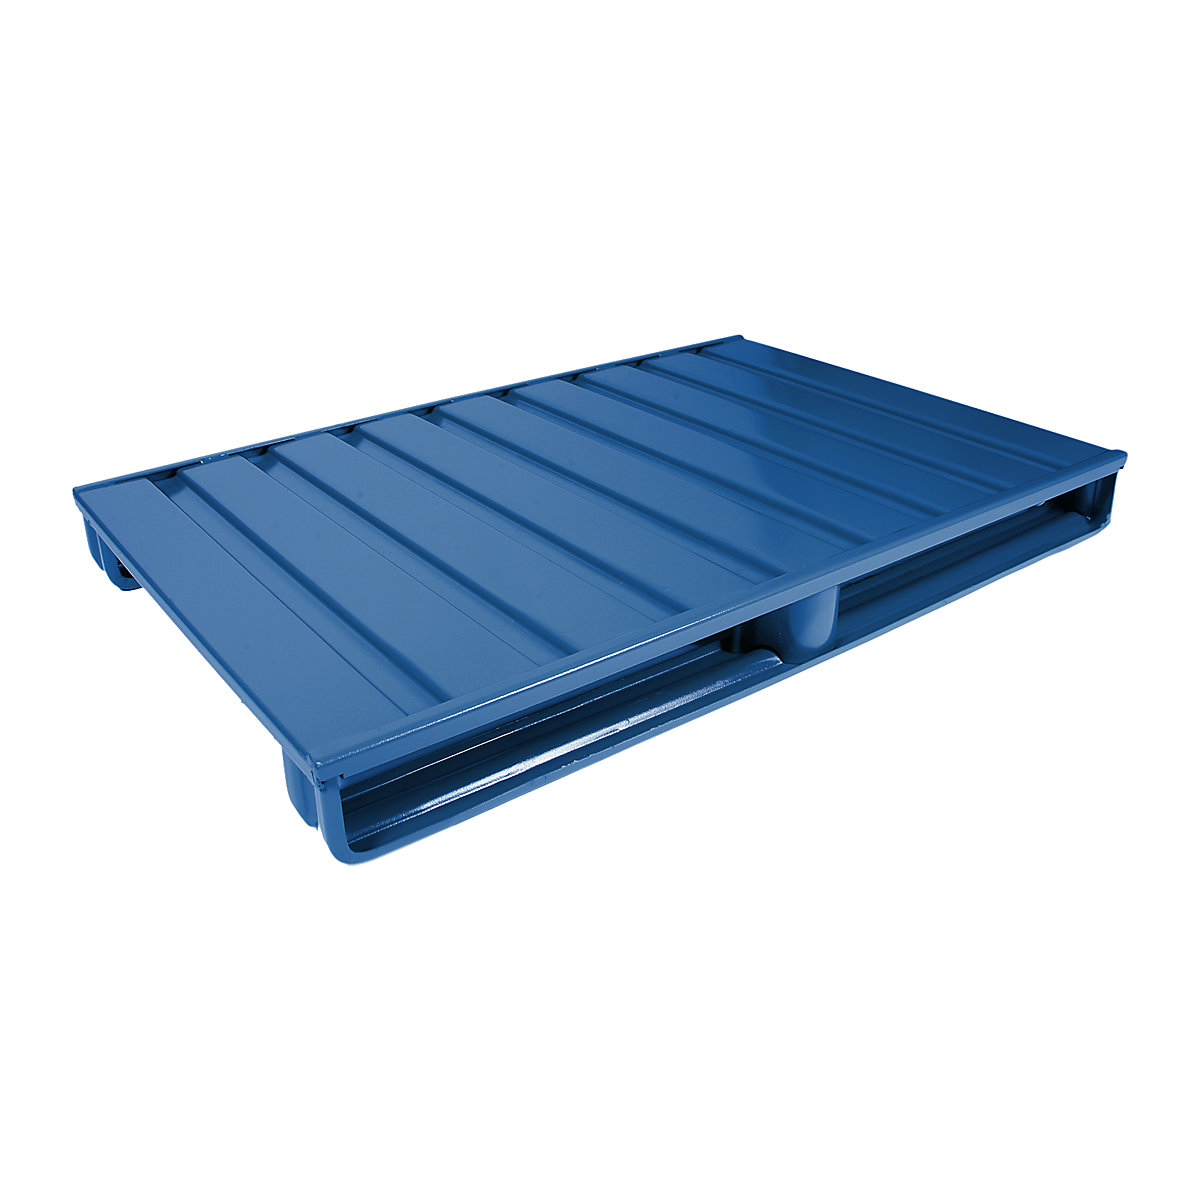 Čelična ravna paleta – Heson, DxŠ 1200 x 800 mm, nosivost 2000 kg, u encijan plavoj boji-3